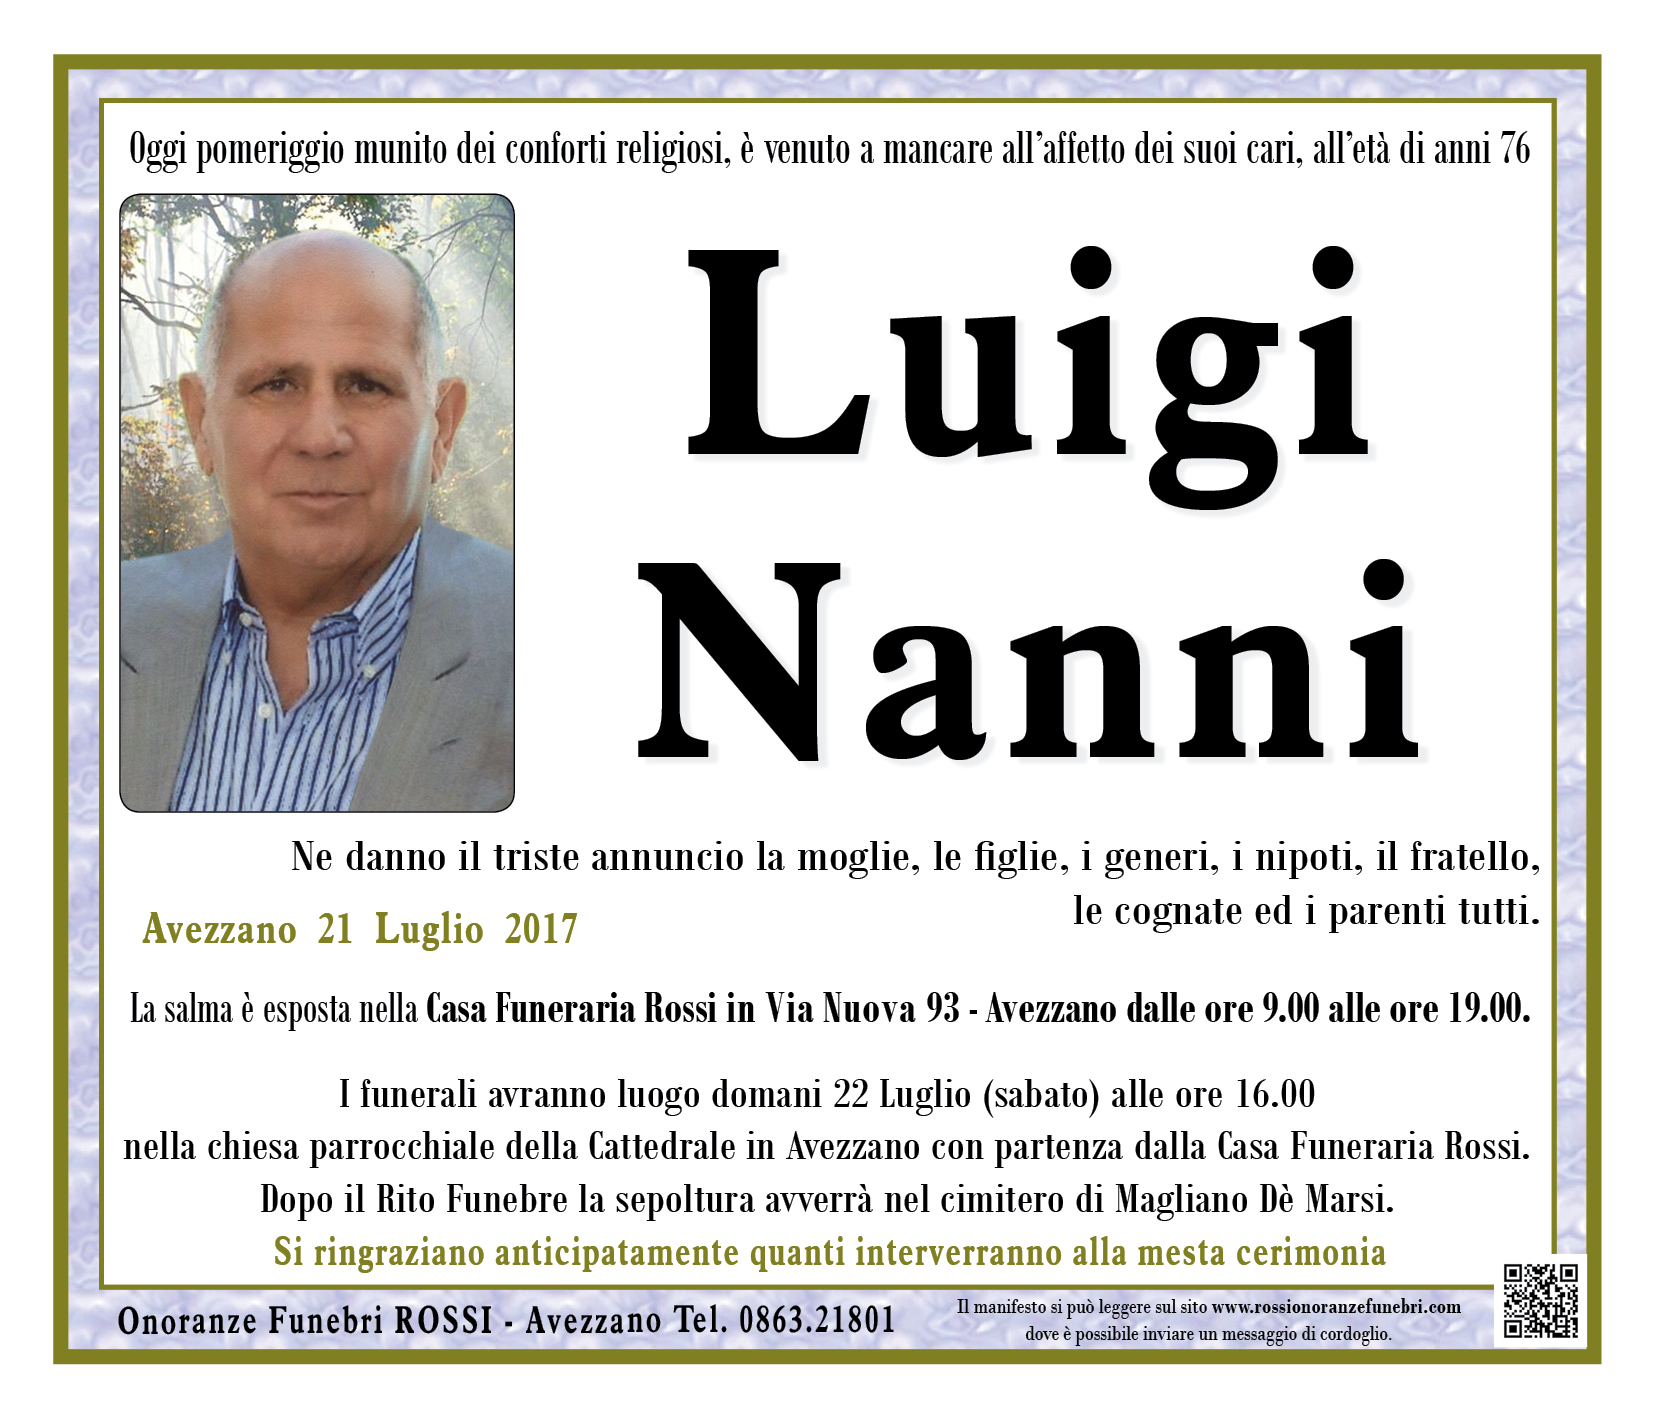 Luigi Nanni